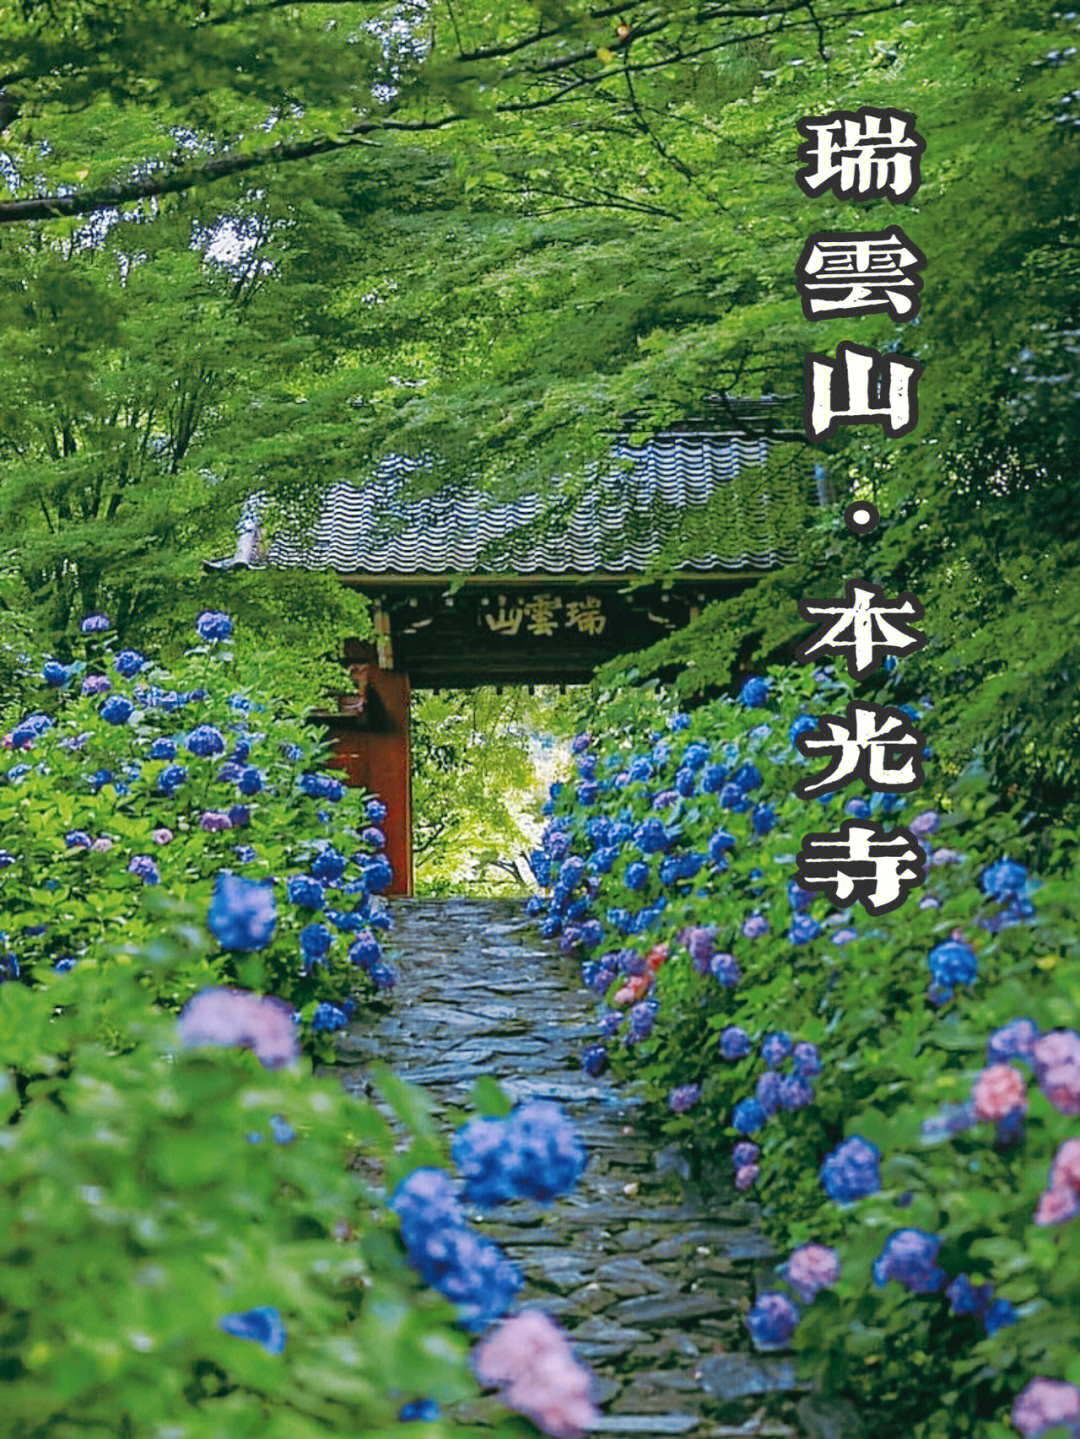 在日本爱知县,本光寺在每年的6月,都会成为一道亮丽的风景线